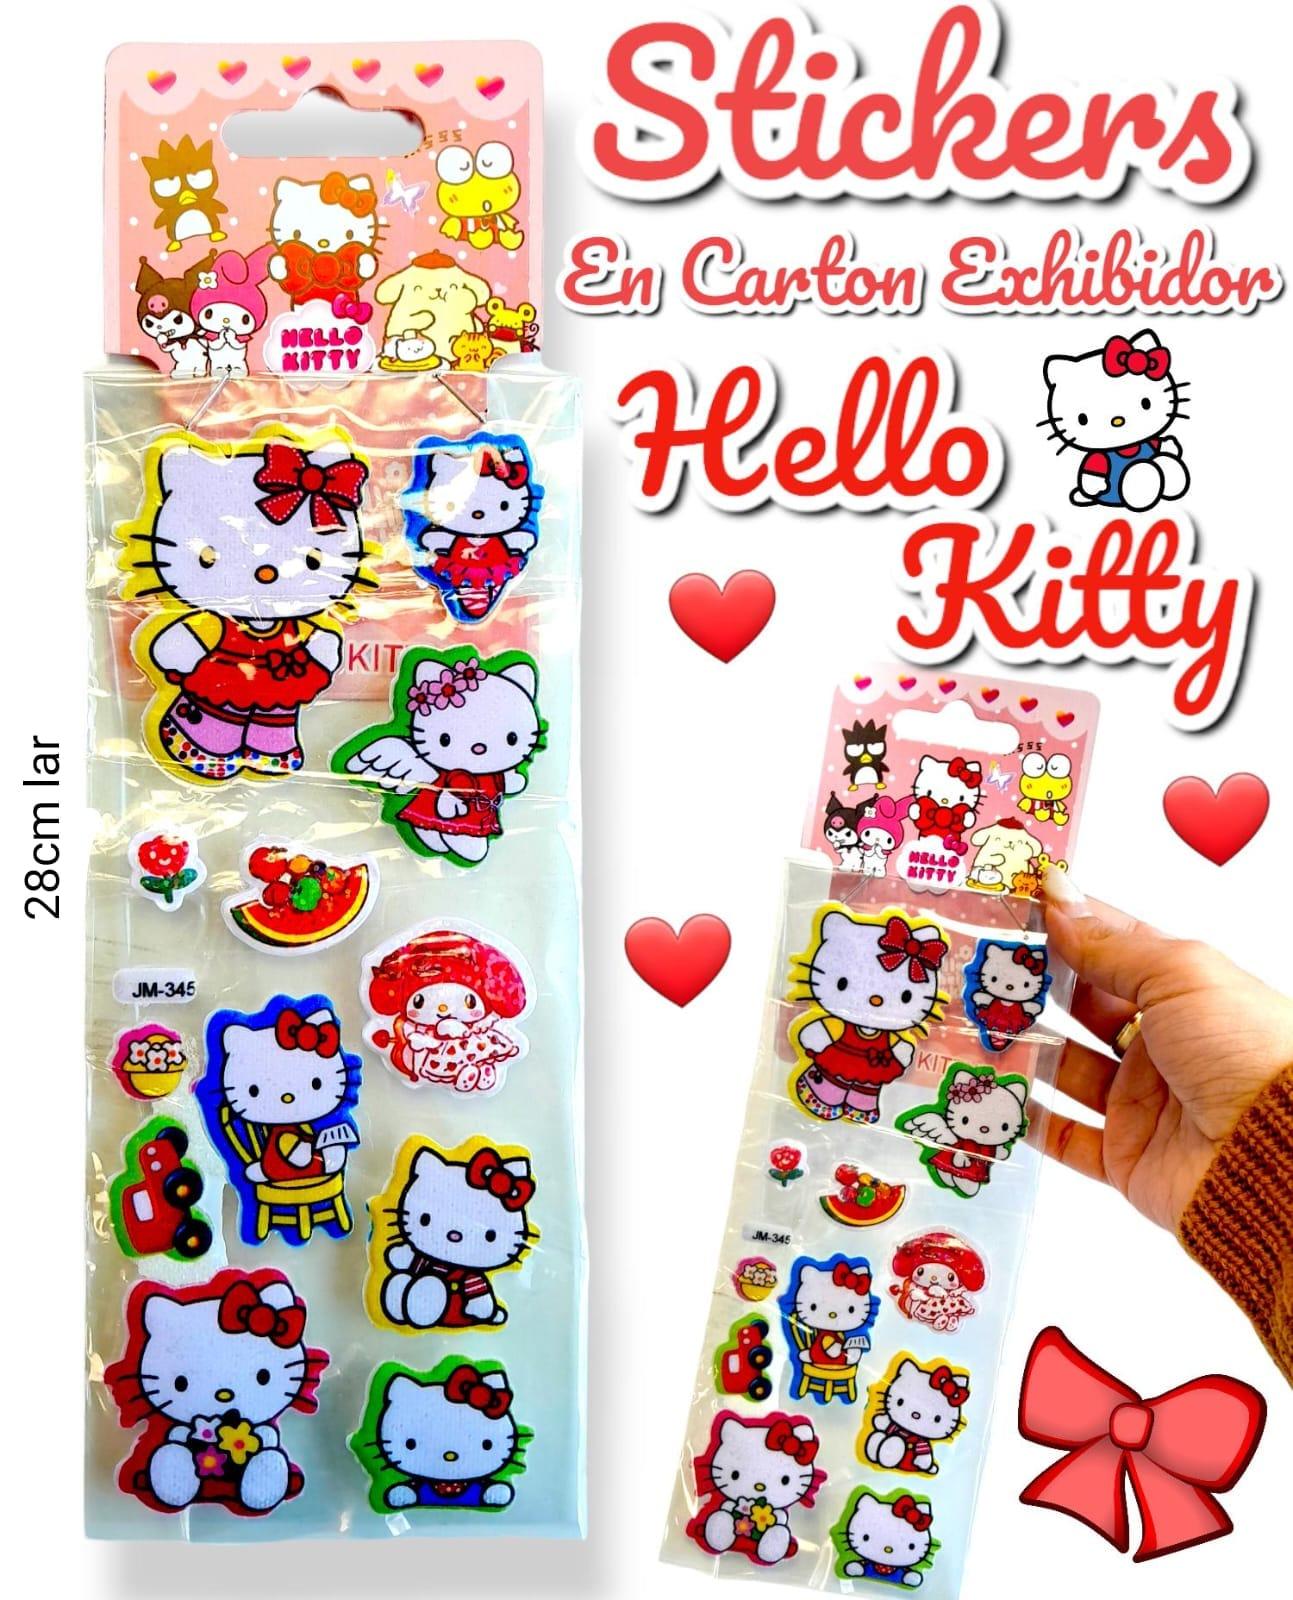 Stickers En Carton Exhibidor HELLO KITTY 